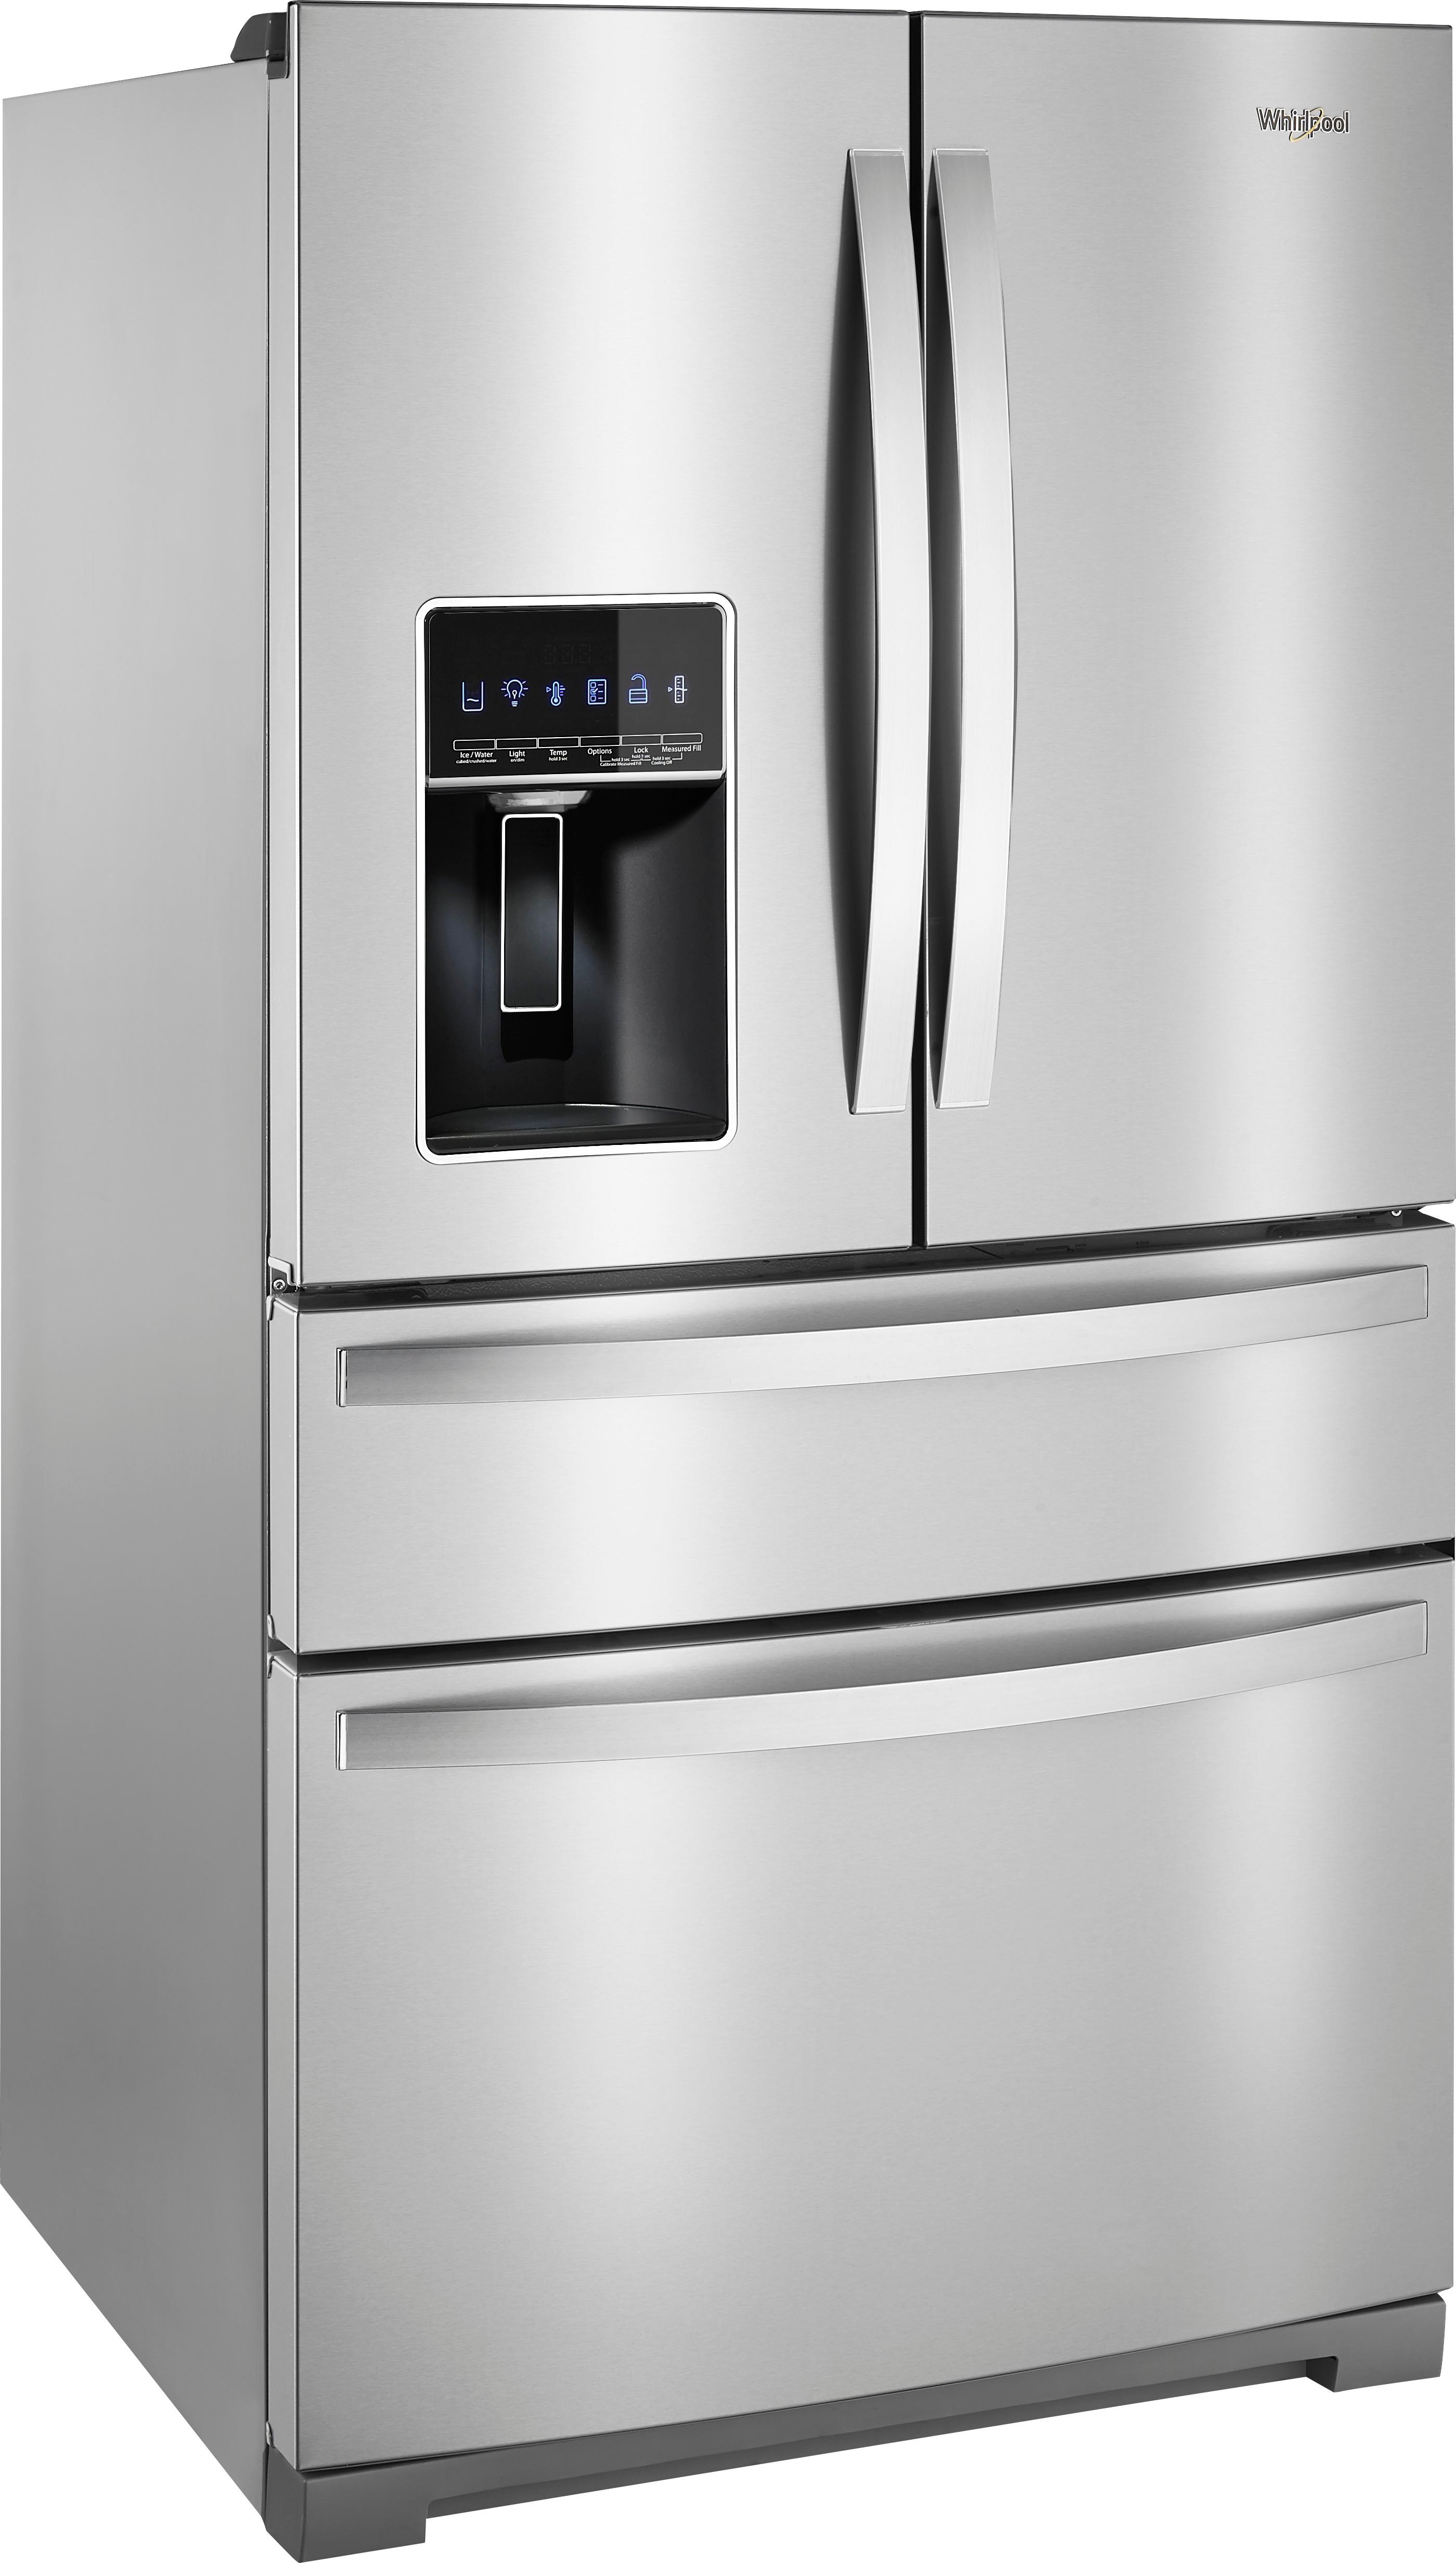 Whirlpool 26.2 Cu. Ft. 4-Door French Door Refrigerator Stainless steel Best Buy Refrigerators Stainless Steel